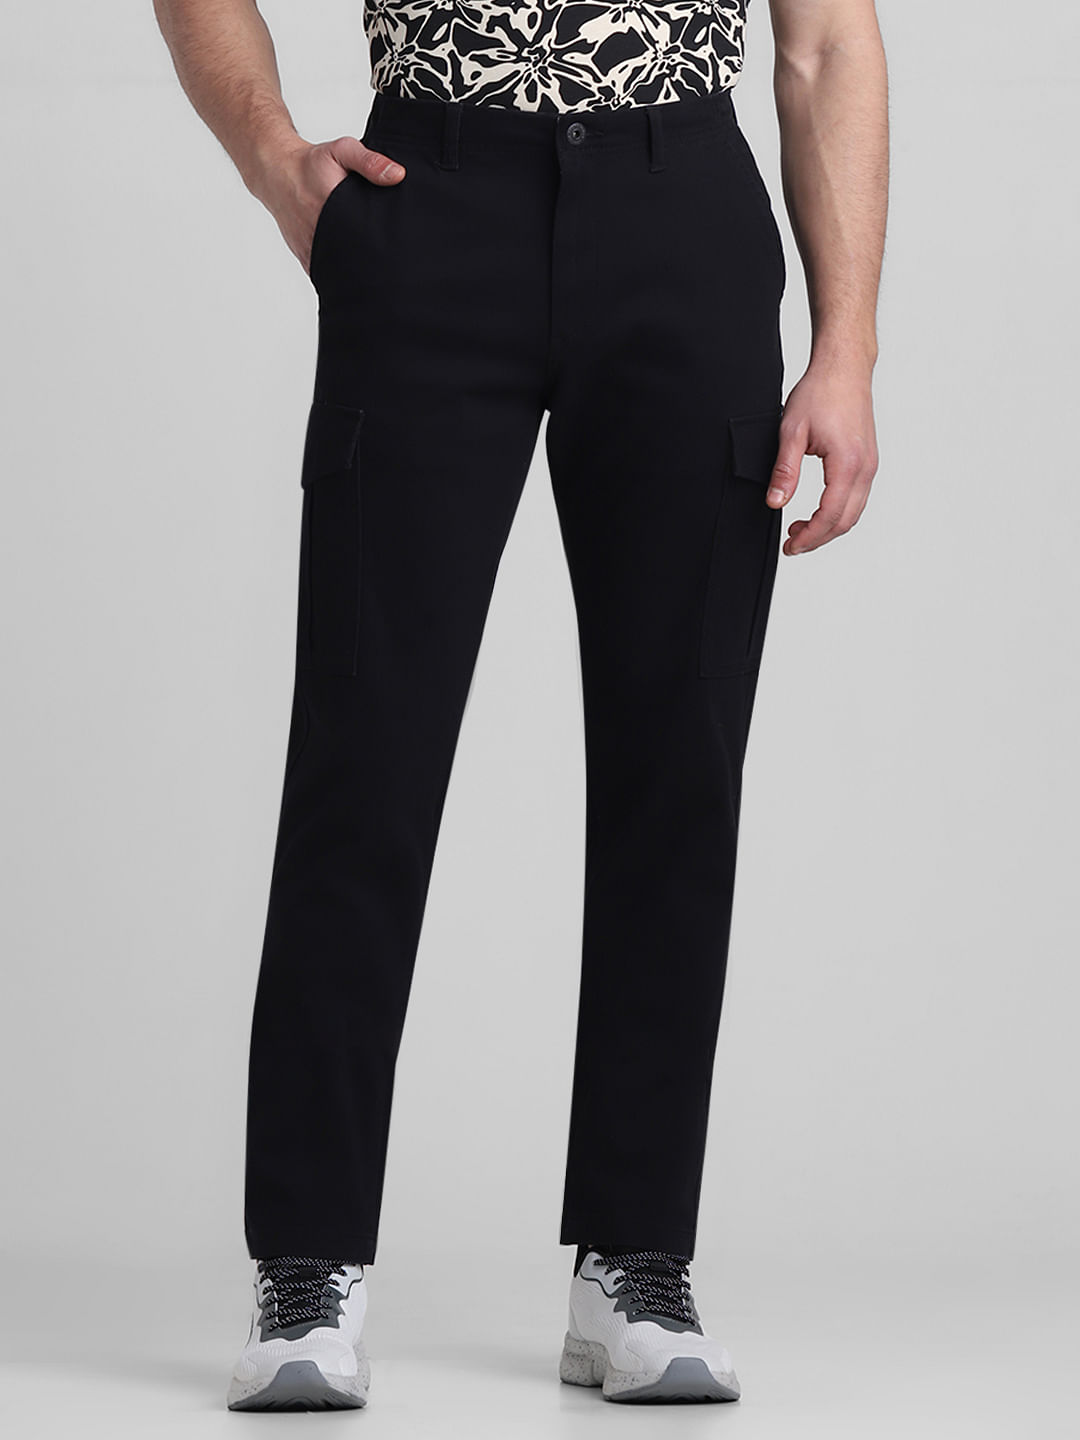 Kiton Pants Dark Brown 5 Pocket Casual Pants Slim Fit 33 - Tie Deals